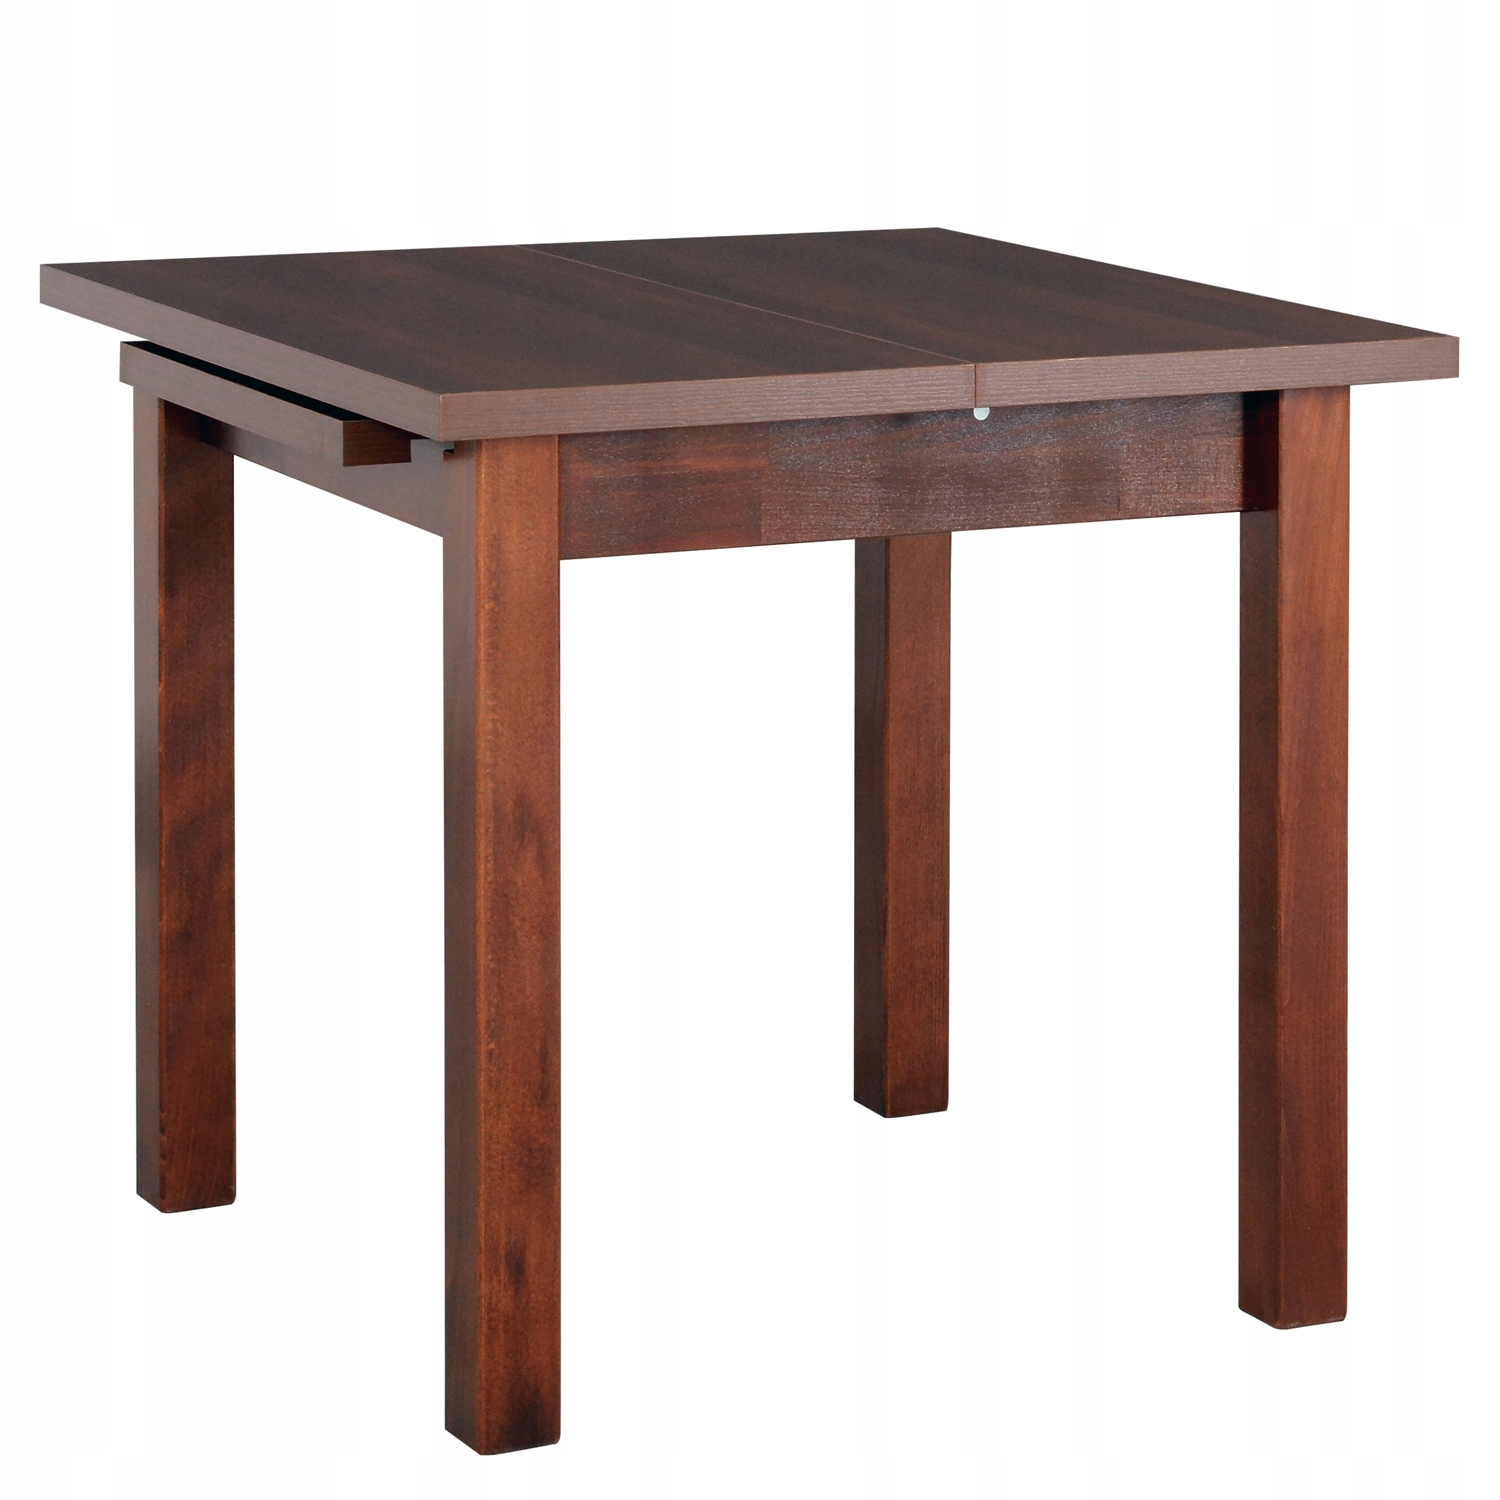 Кухонные столы 90 см. Обеденный стол Drewmix Max 4 s. Стол раскладной квадратный 90х90 ФС 02.28. Стол 80 80 раскладной. Стол 90х90 раздвижной обеденный Oregon.